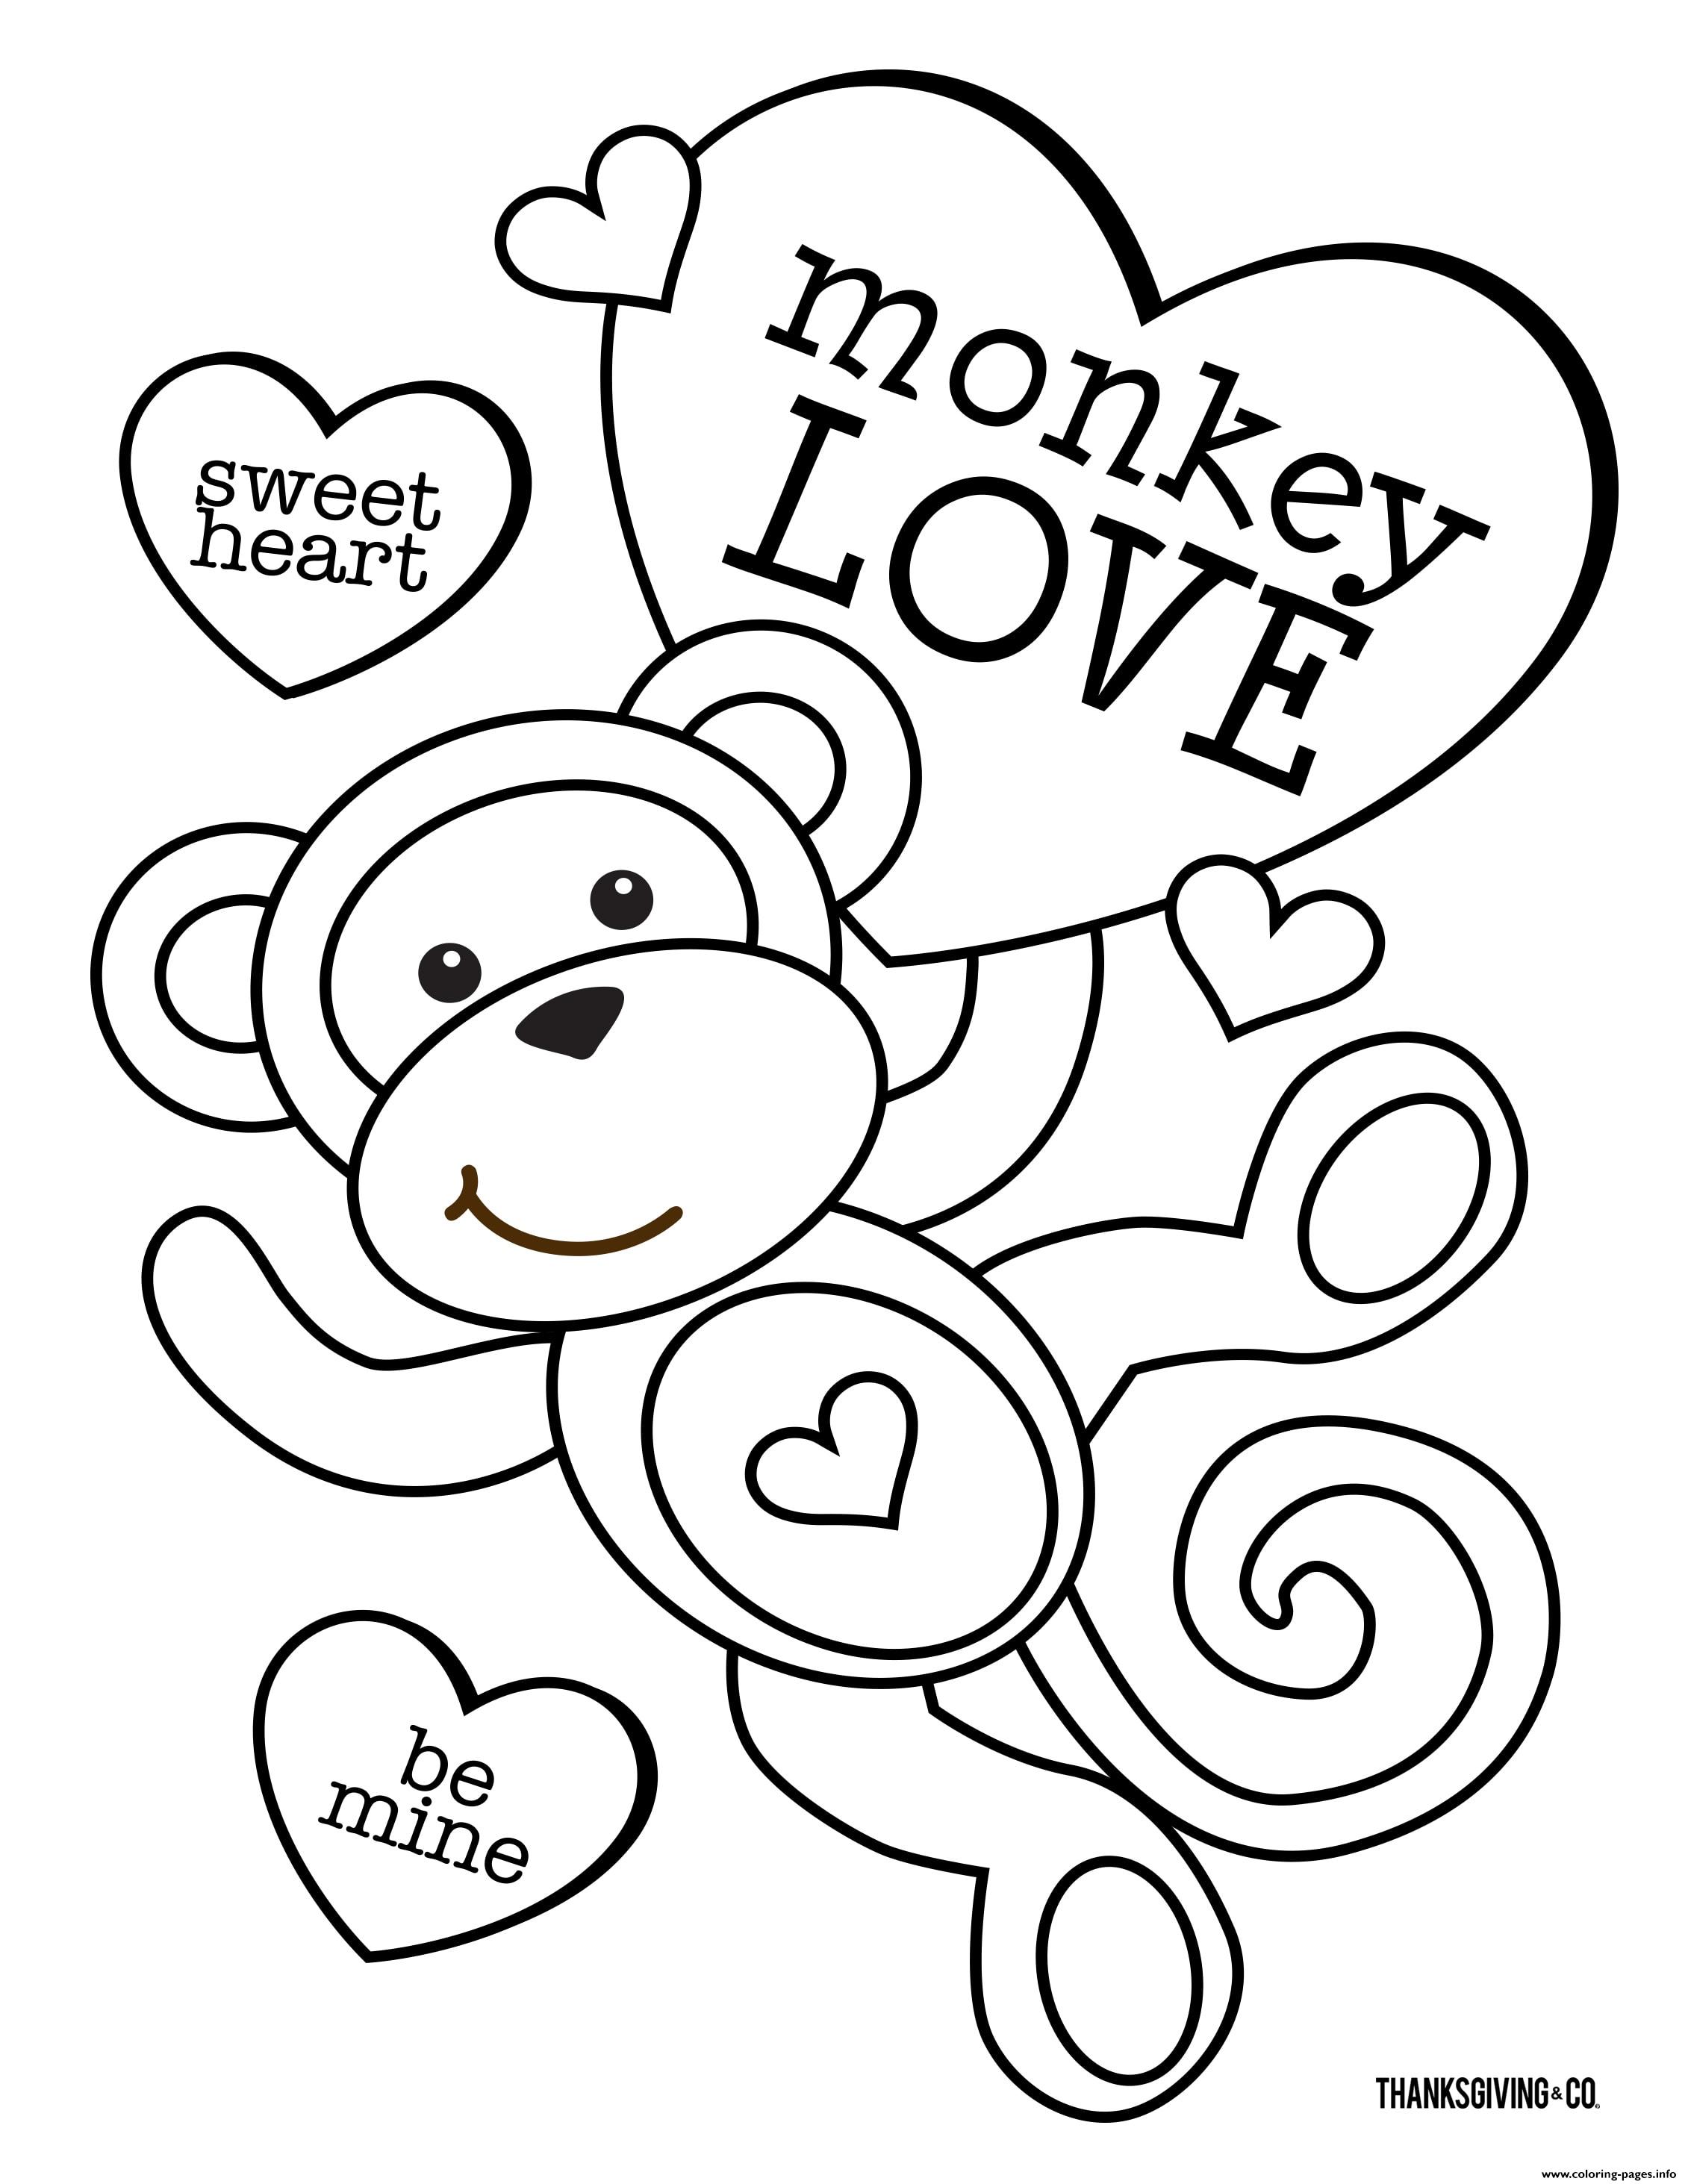 Sweet Heart Monkey Love coloring